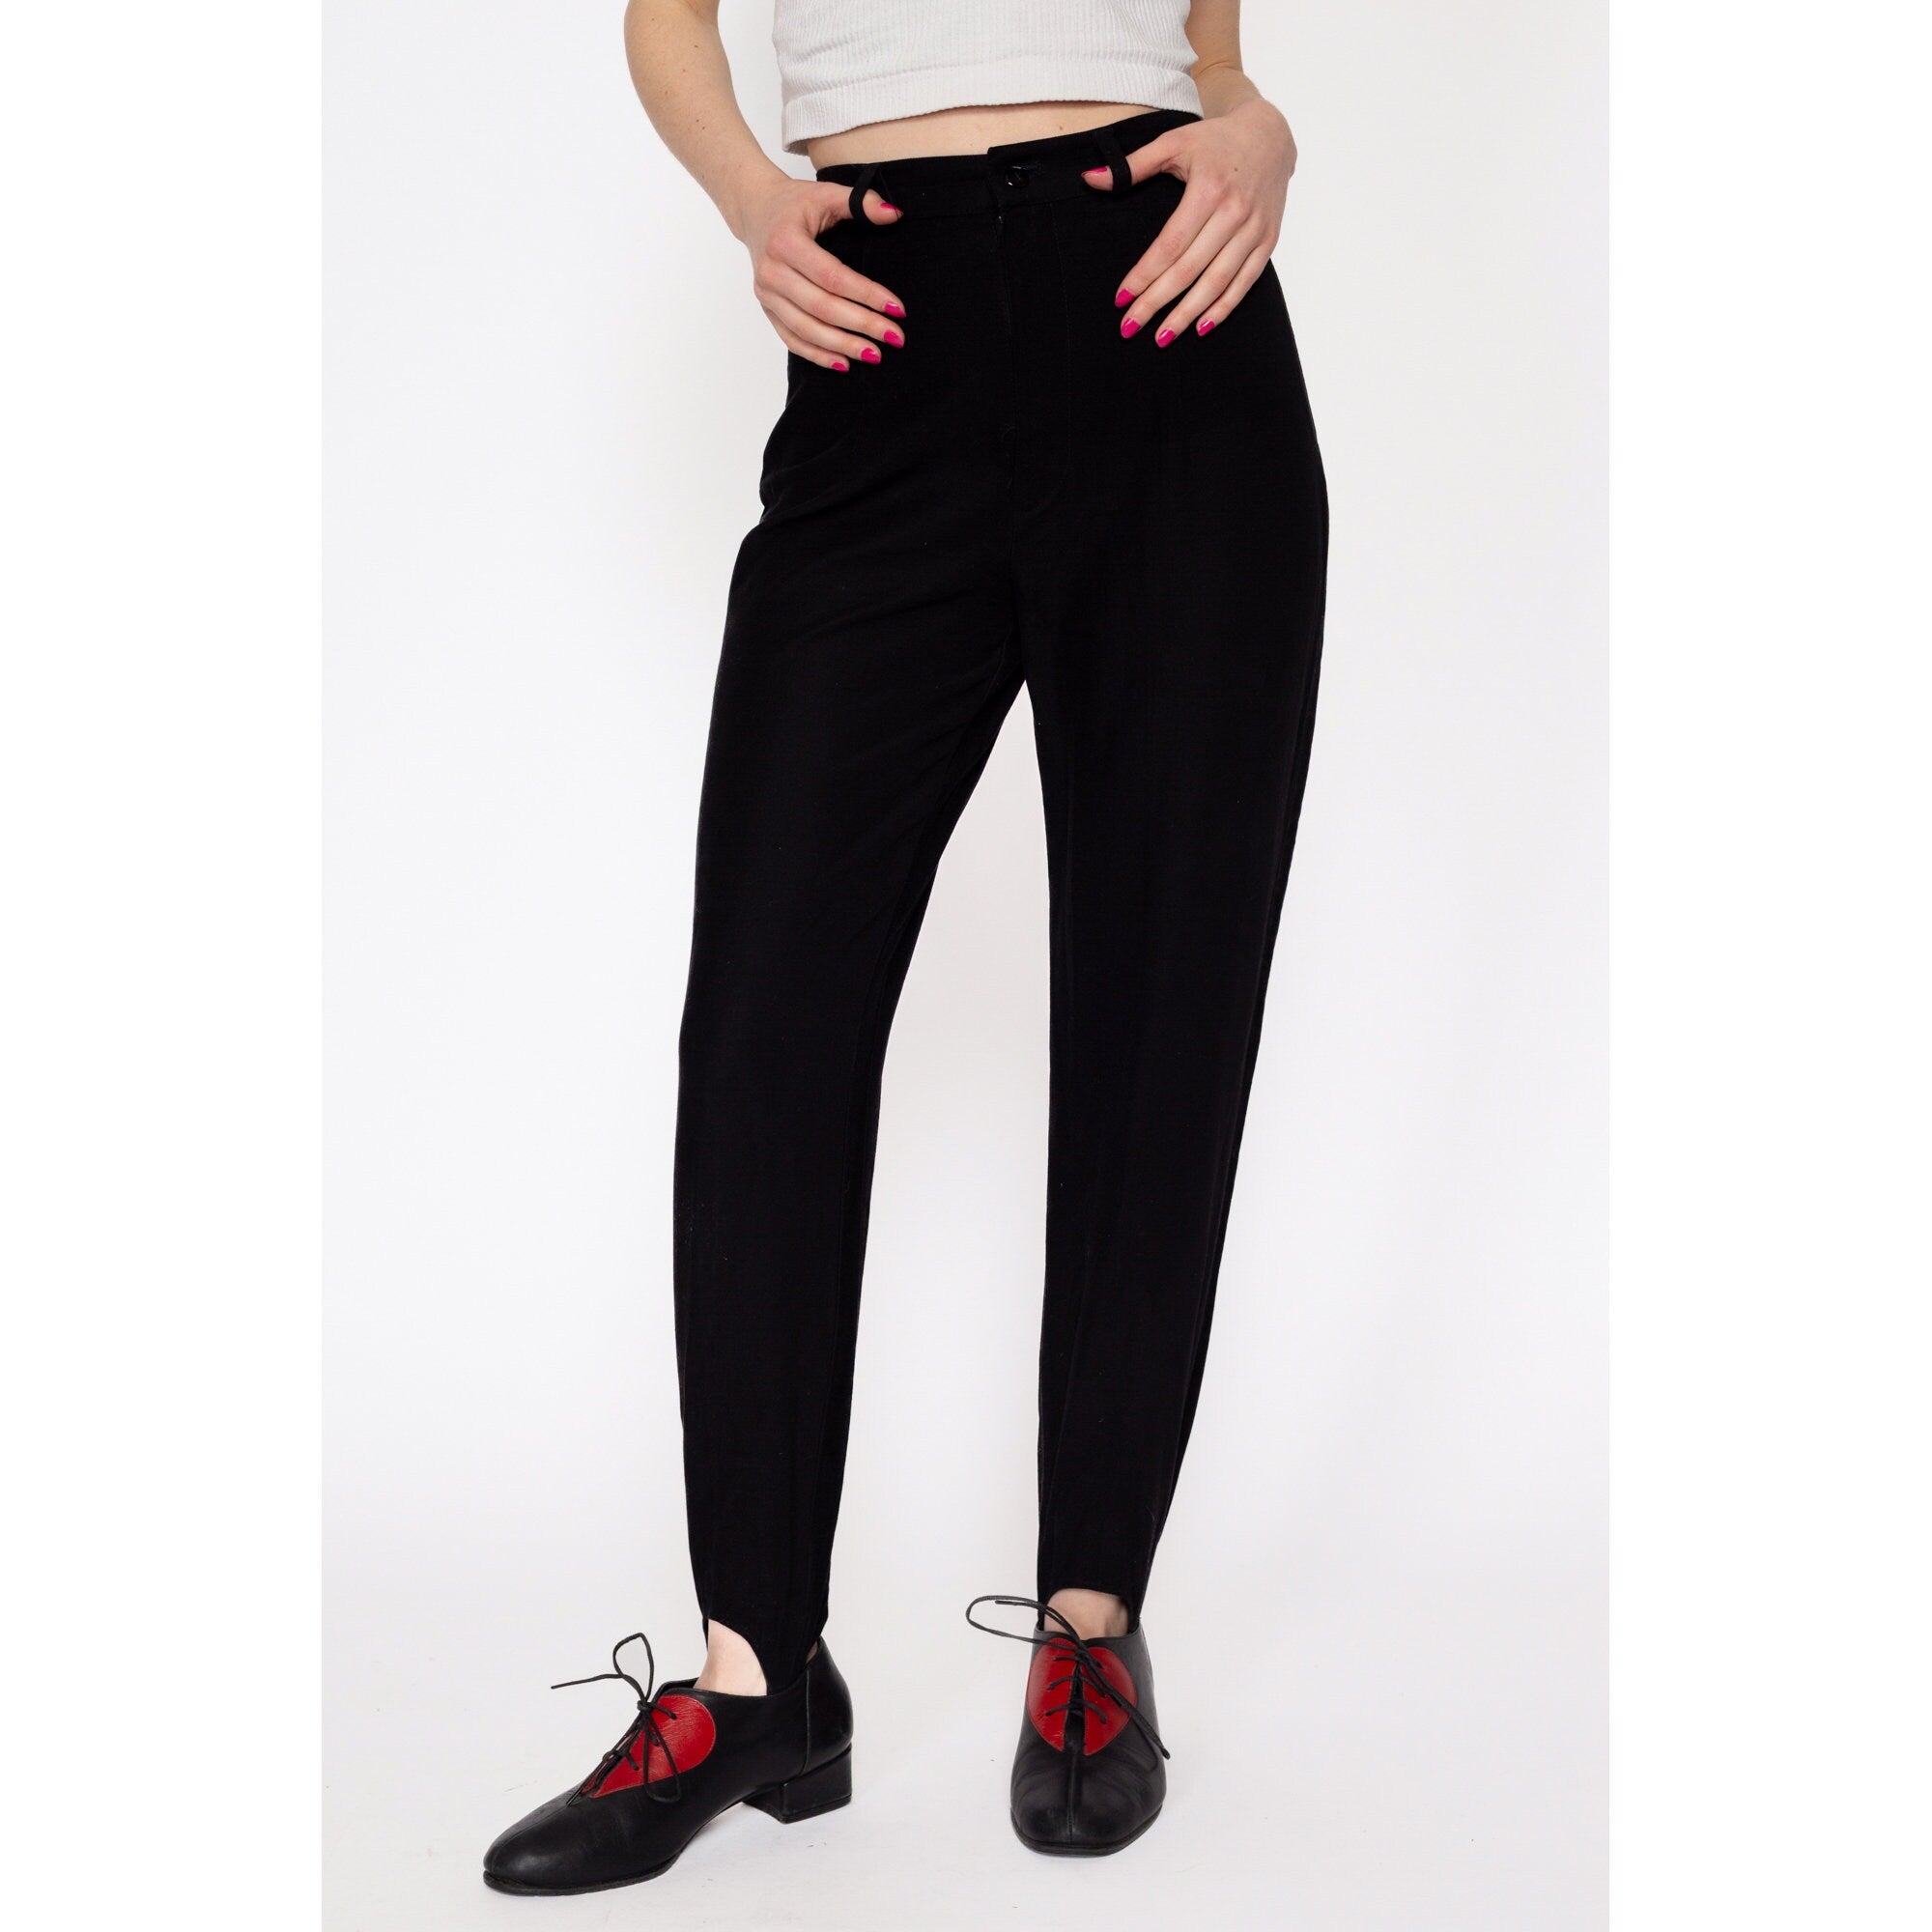 Vtg Skoozi Girls Red Plaid Stirrup Pants Sz 5 24” waist 80s 90s Retro | eBay